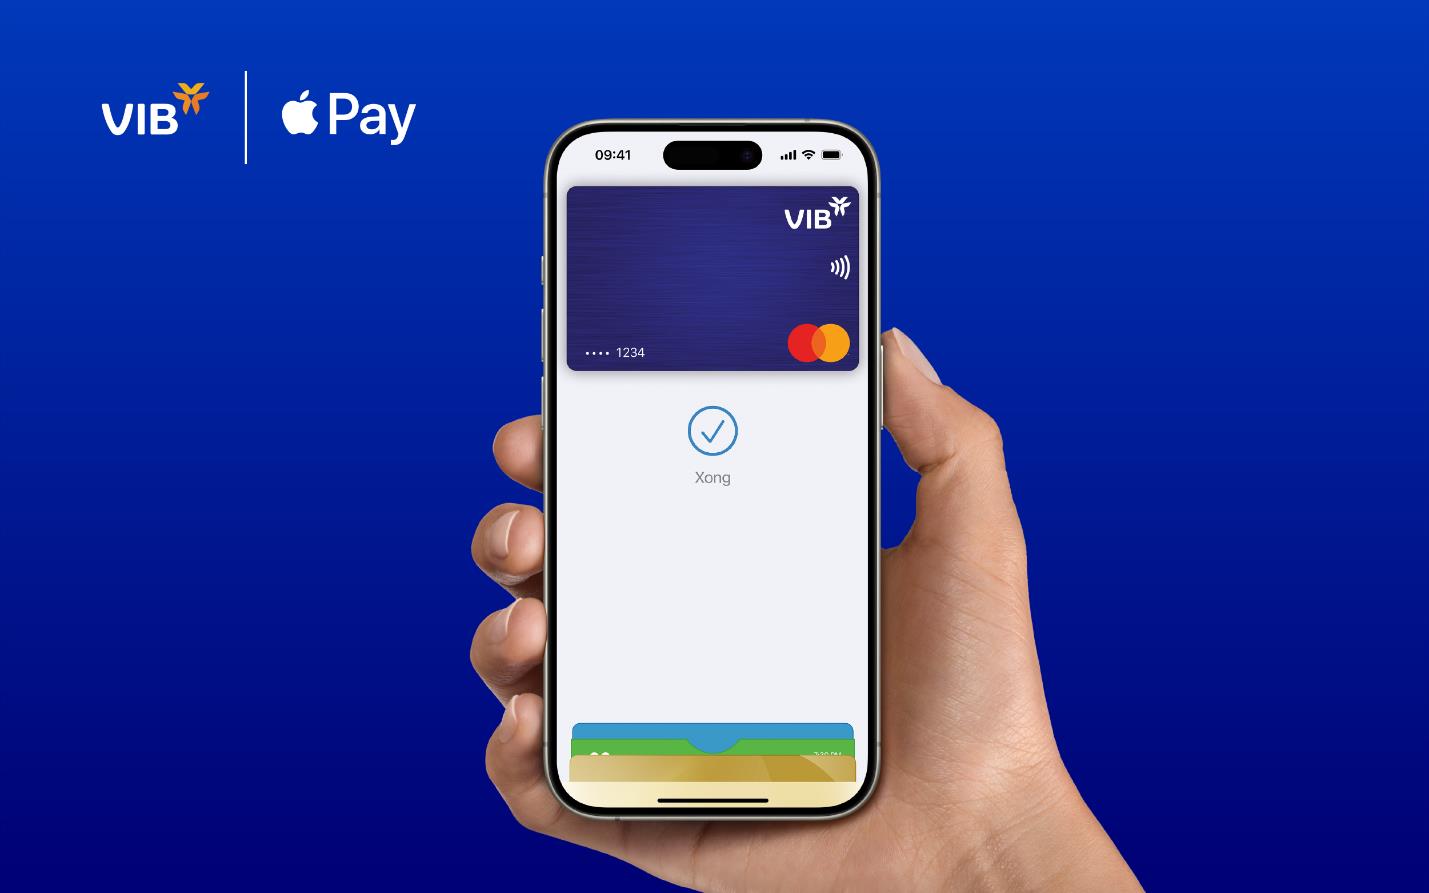 VIB triển khai phương thức thanh toán qua Apple Pay đơn giản, an toàn và bảo mật - Ảnh 1.